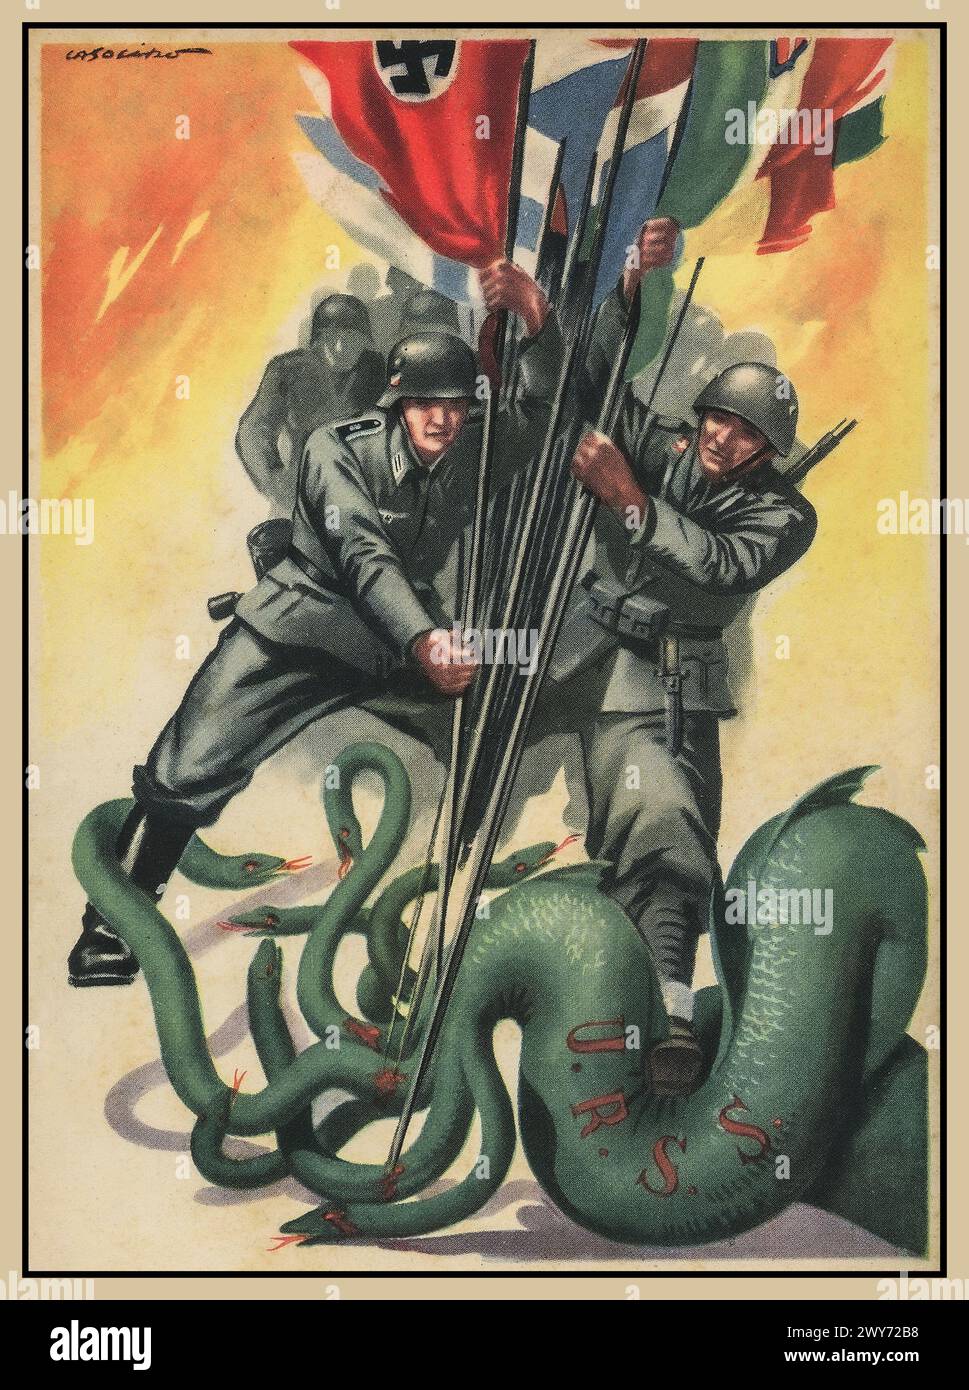 Affiche de propagande nazie / axe de la seconde Guerre mondiale avec l'Allemagne nazie de la Wehrmacht et des soldats de l'axe, combattant un serpent vert de l'URSS, tenant divers drapeaux de bannière des pays de l'axe, y compris la croix gammée .. Seconde Guerre mondiale seconde Guerre mondiale des années 1940 Banque D'Images